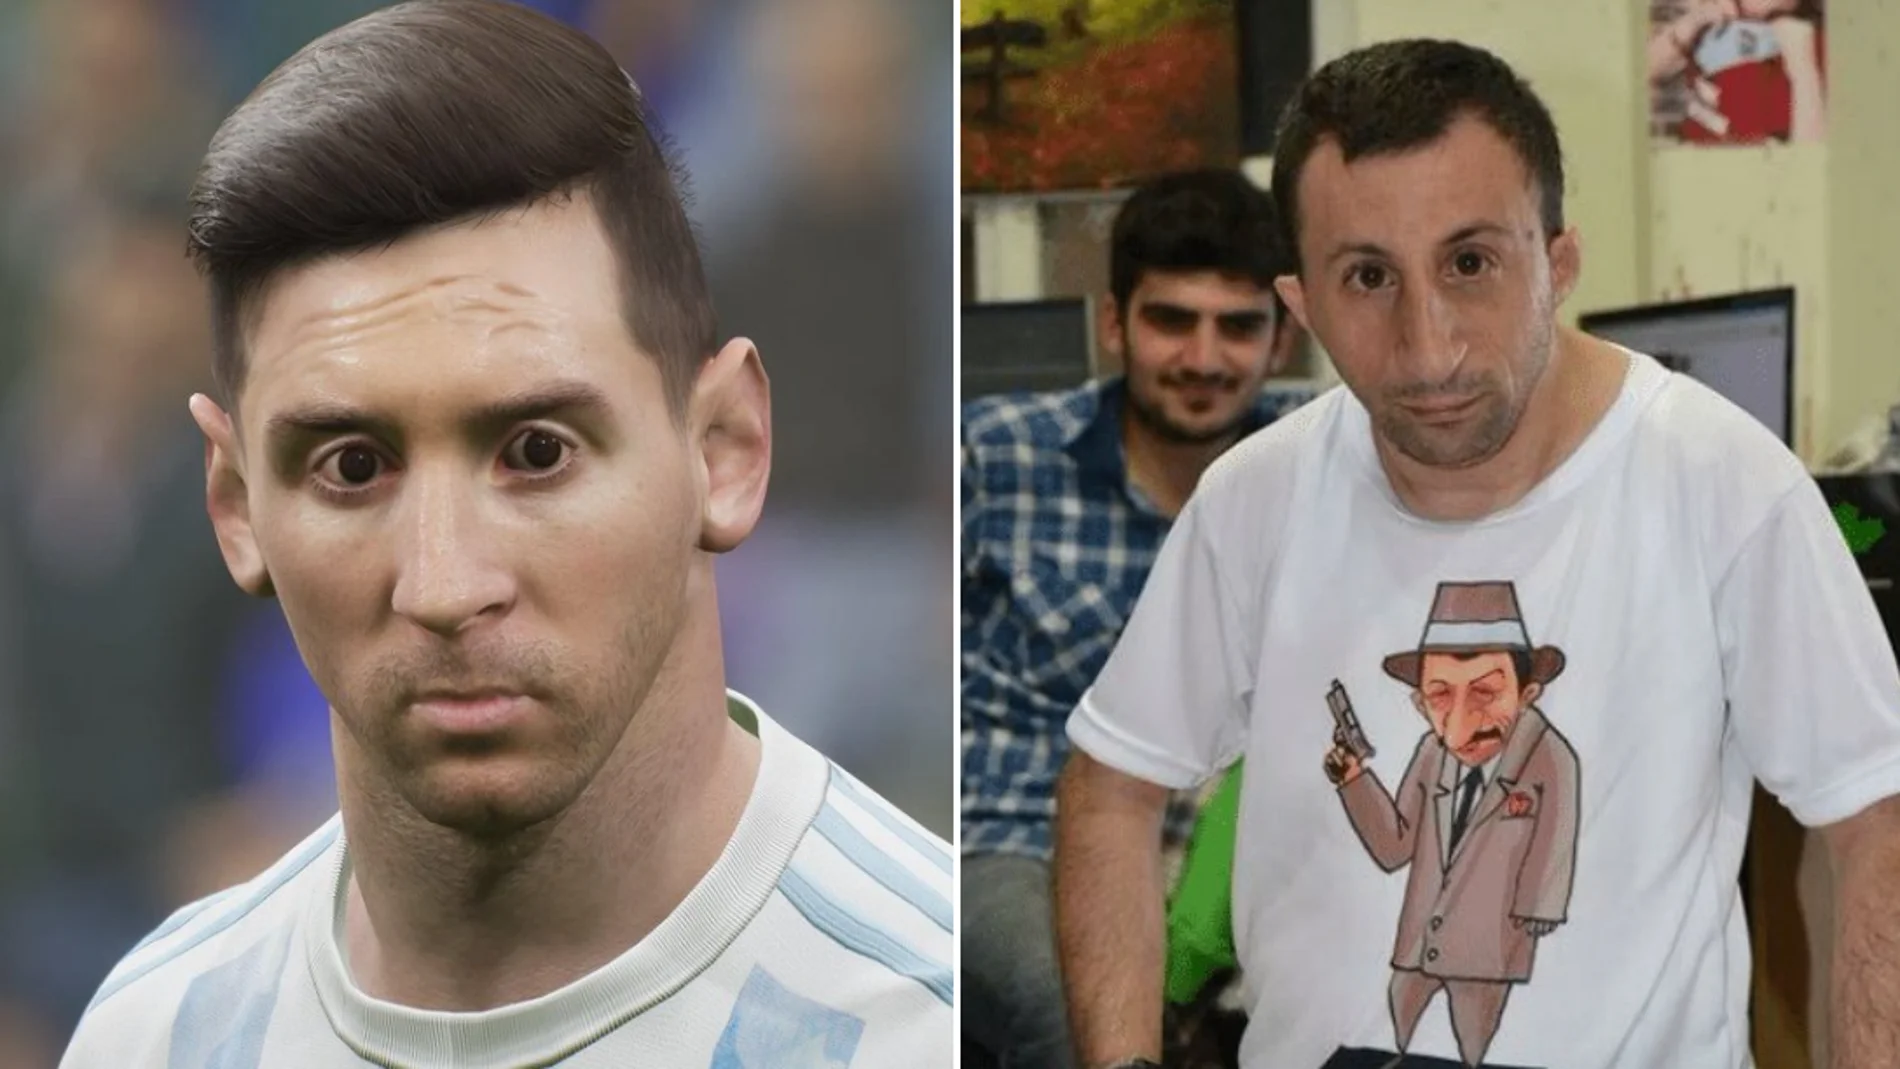 Los mejores memes del videojuego eFootball 2022 por las caras de Messi o Cristiano Ronaldo